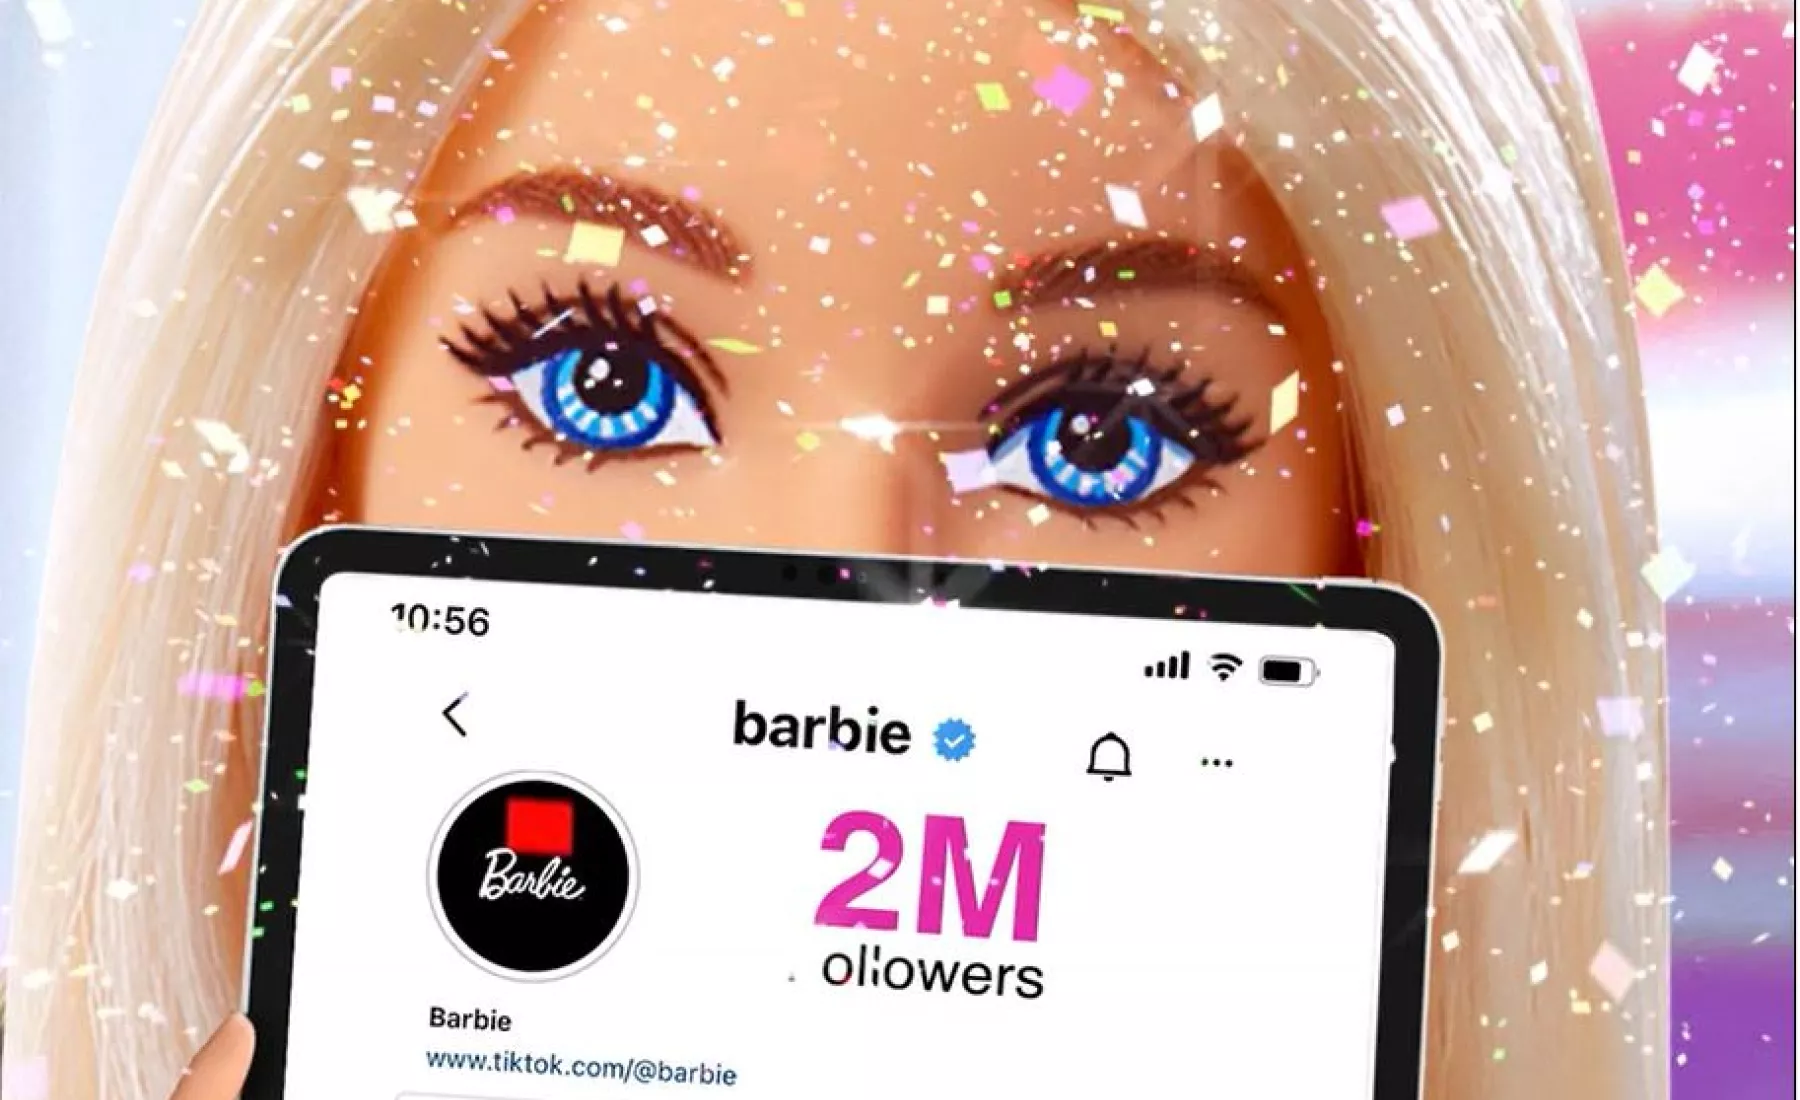 Post von Barbie auf Instagram